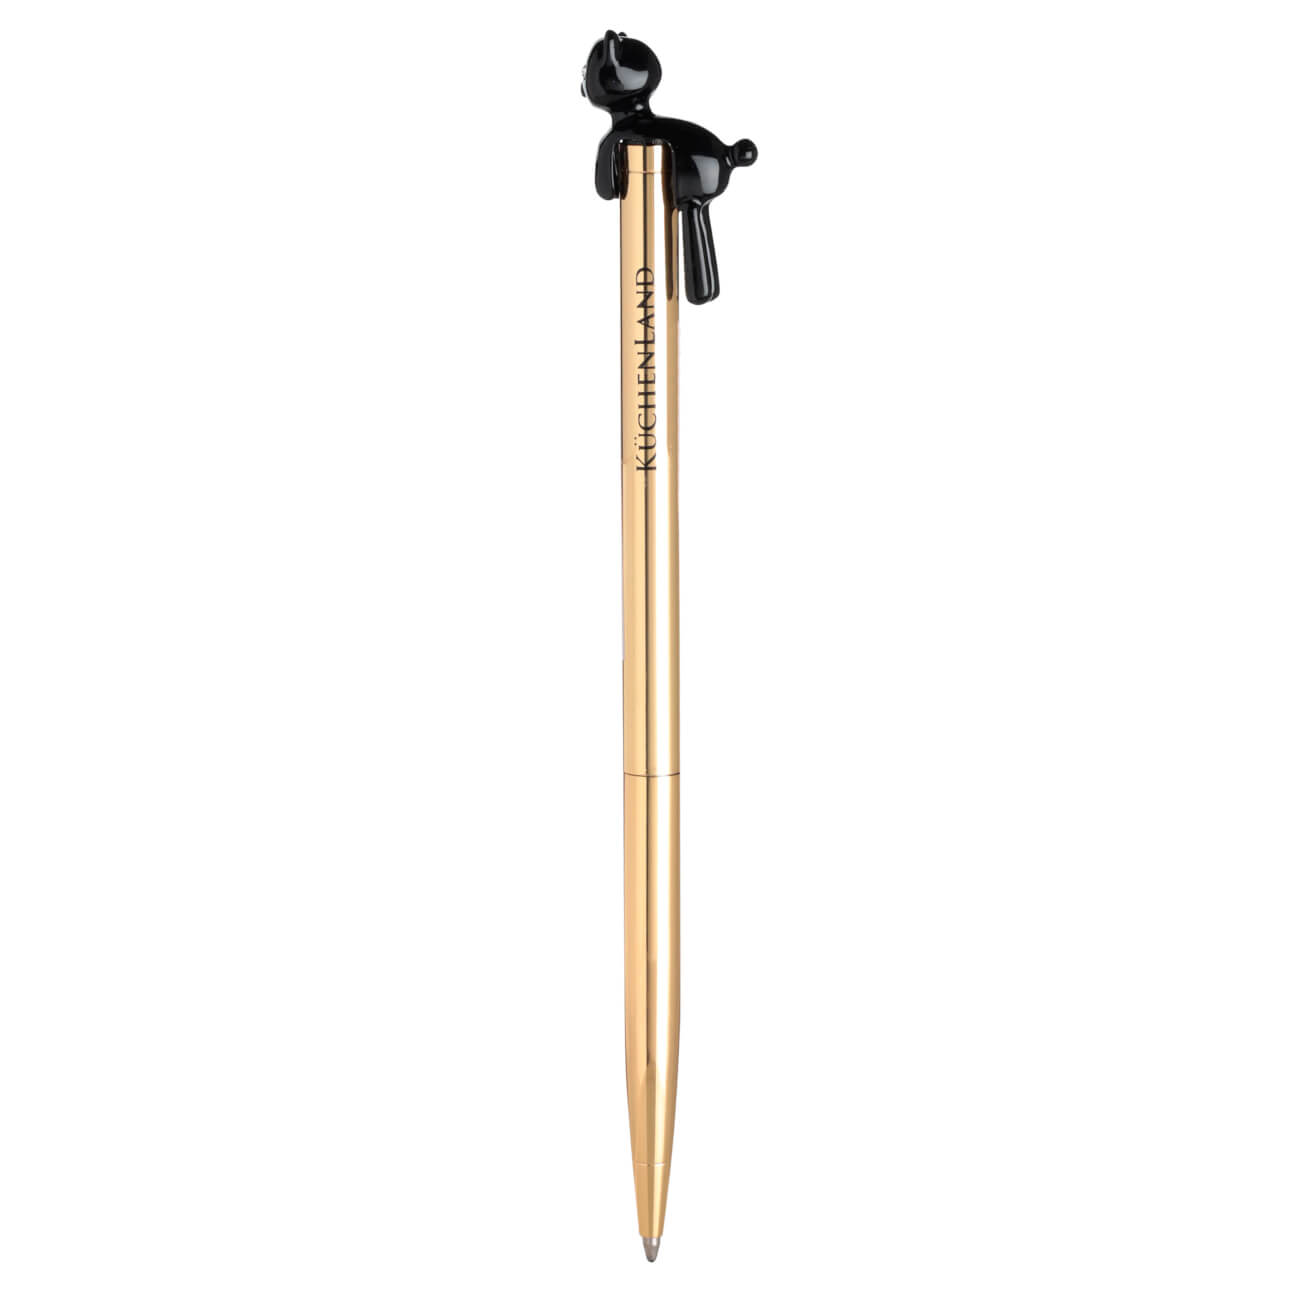 Ручка шариковая, 14 см, с фигуркой, металл, золотистая, Черный кот, Draw figure